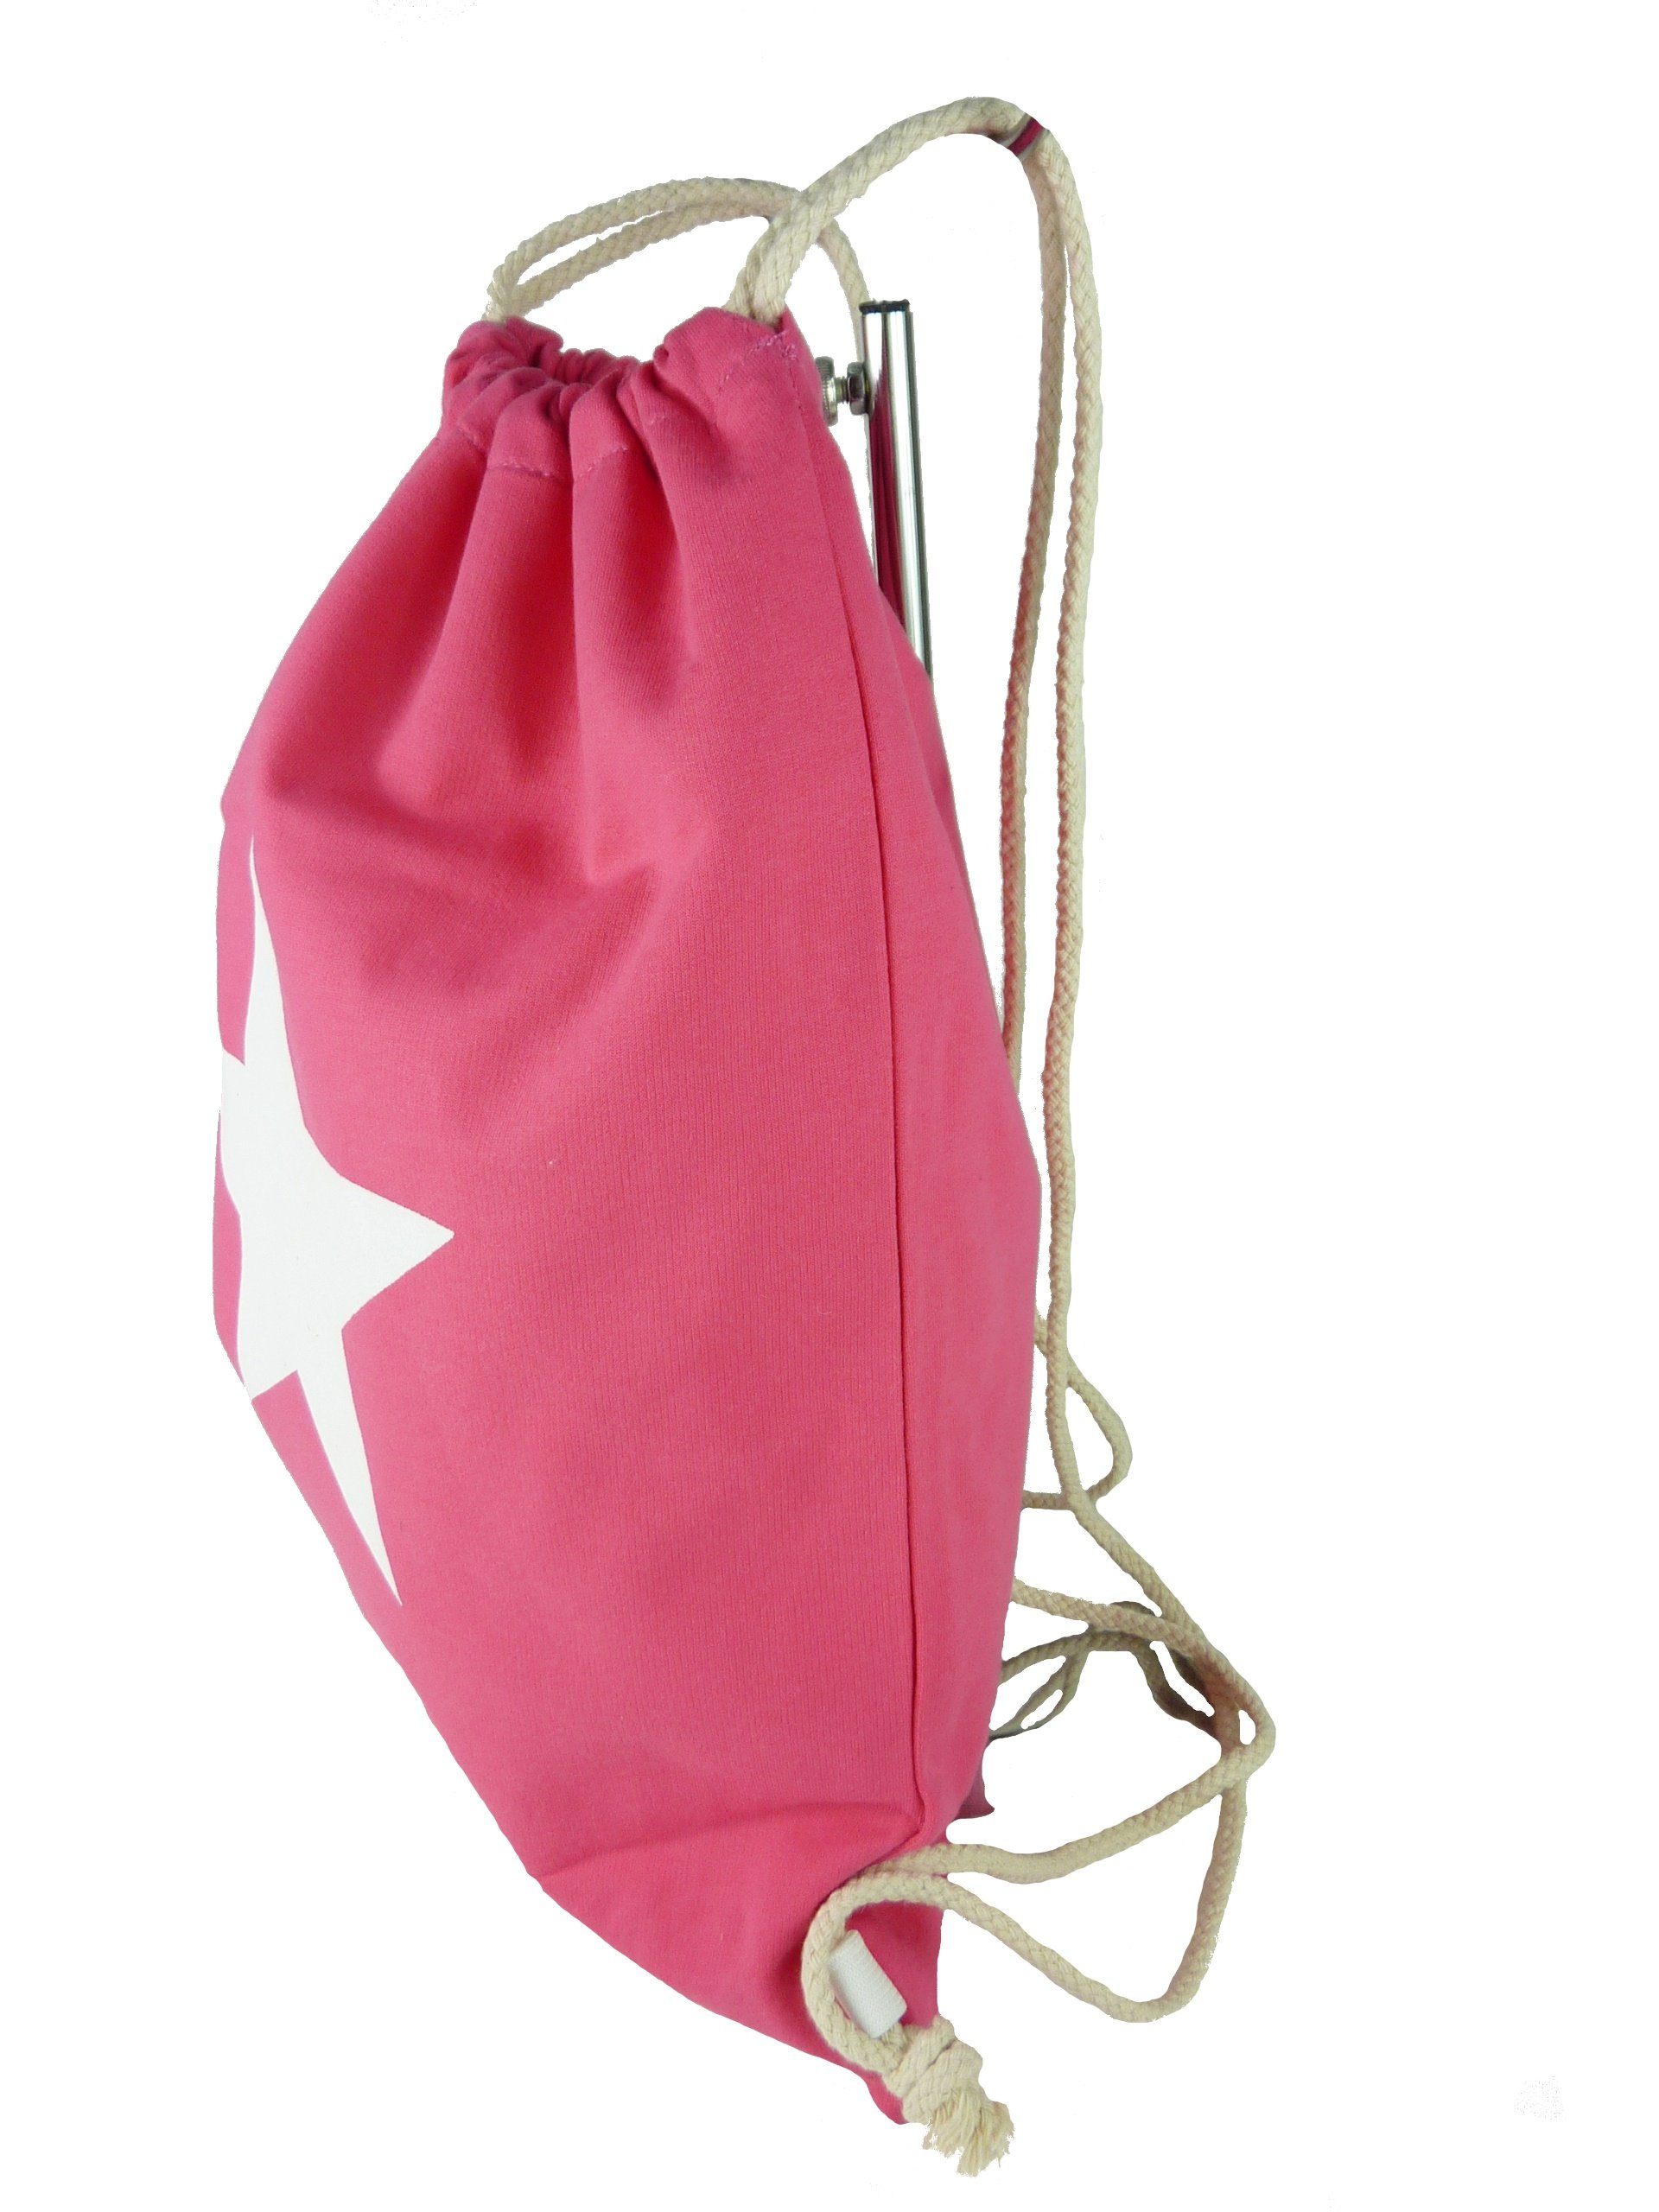 Taschen4life Gymbag Turnbeutel Rucksack 1605, großem pink sling Beutel, Stern, bag, Sportbeutel mit Jute